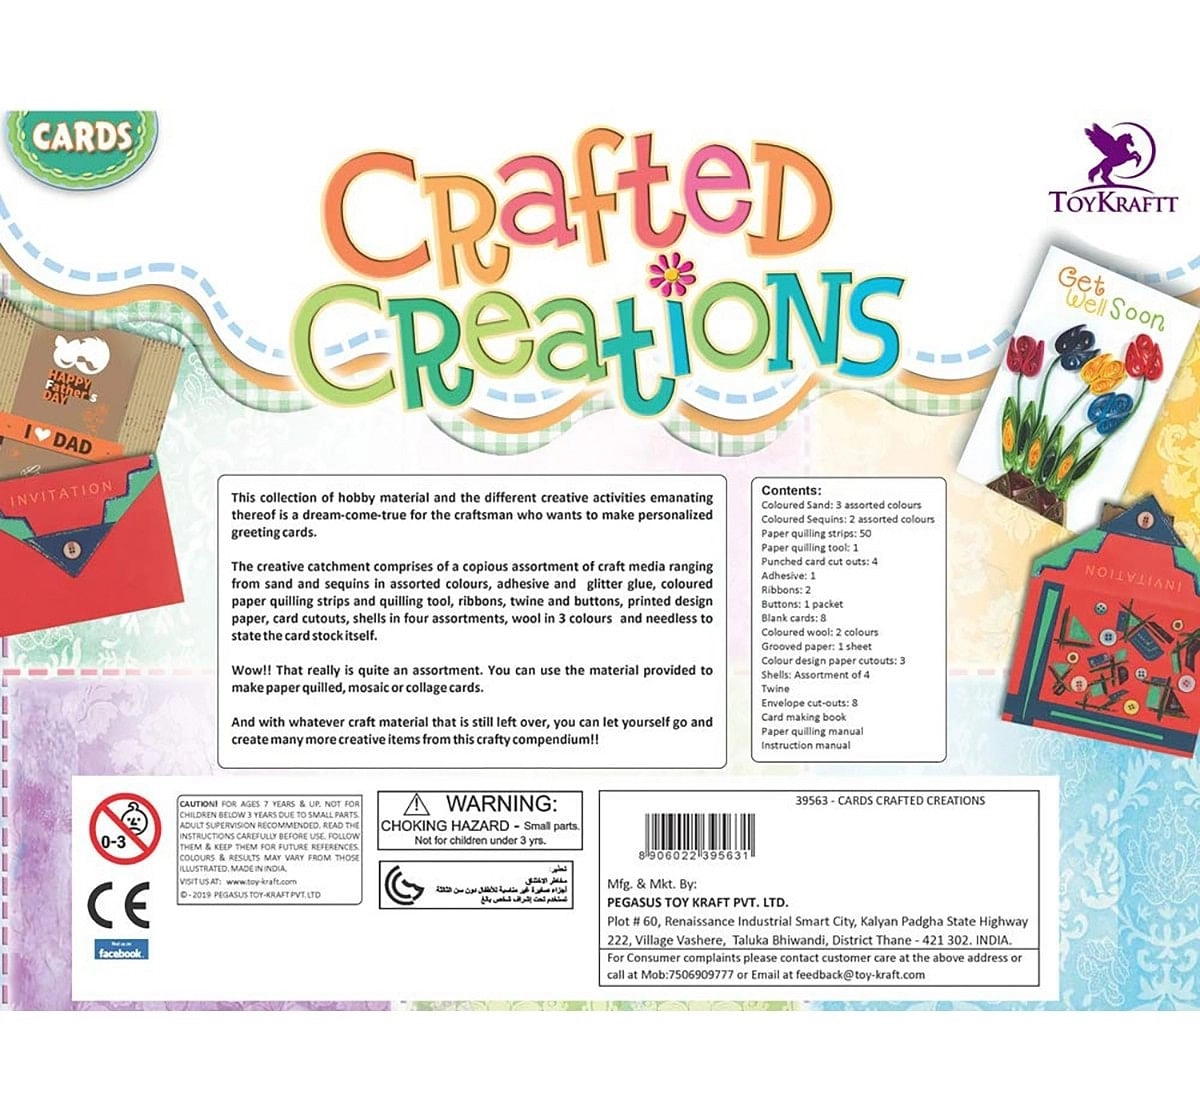 Toy Kraft Fab Card Displays DIY Art & Craft Kits for Kids age 7Y+ 